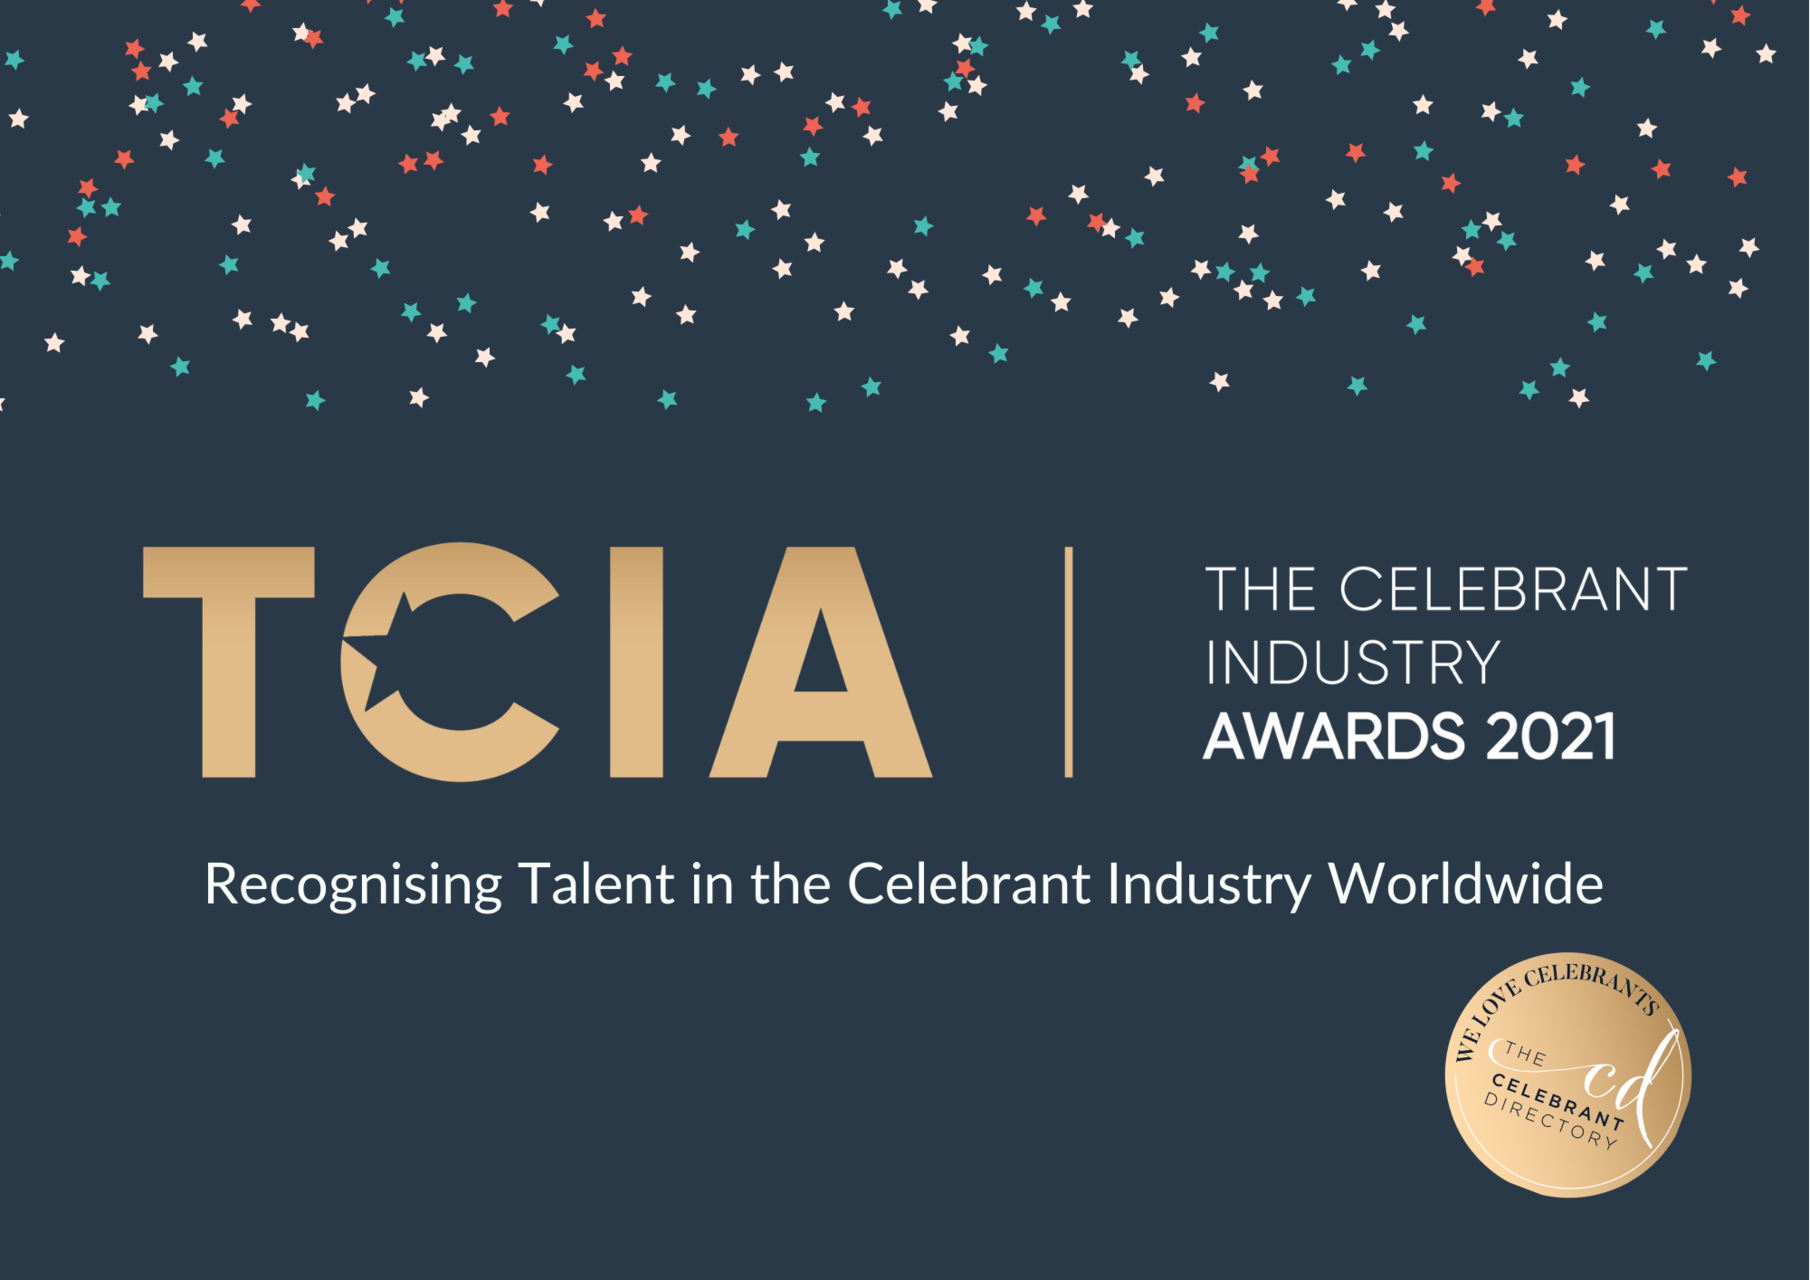 The Celebrant Industry Awards 2021